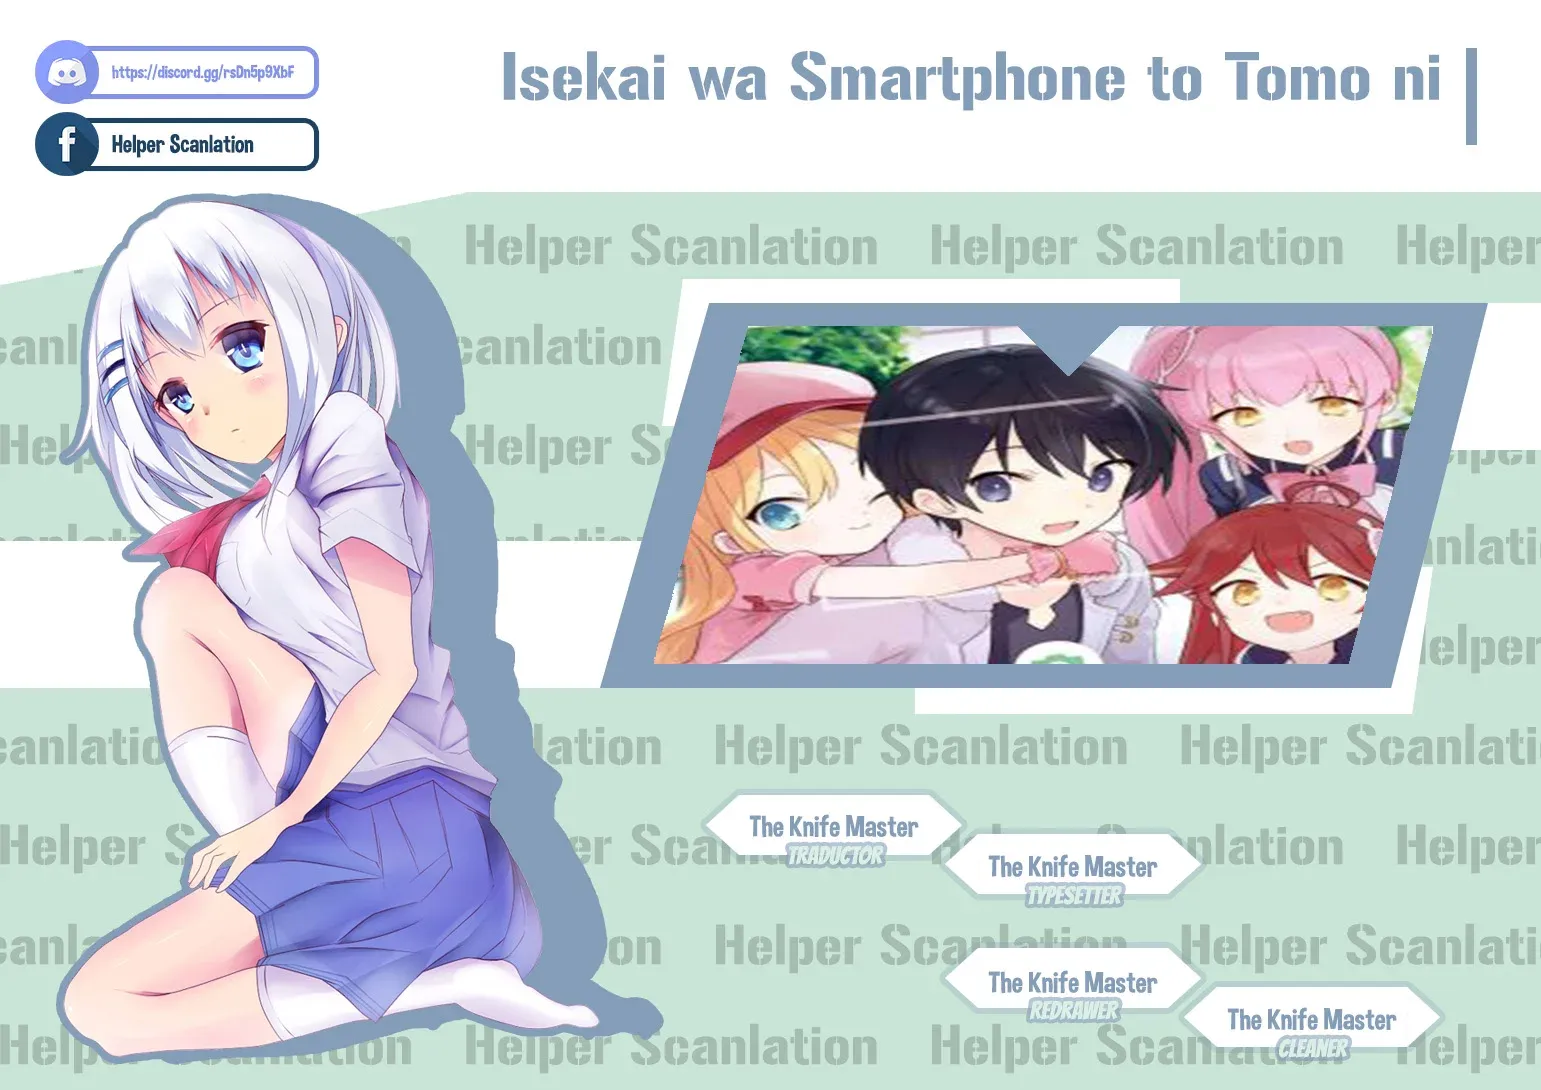 Isekai wa Smartphone to Tomo ni - Vol. 13 Ch. 83 - MangaDex :  r/IsekaiSmartphone